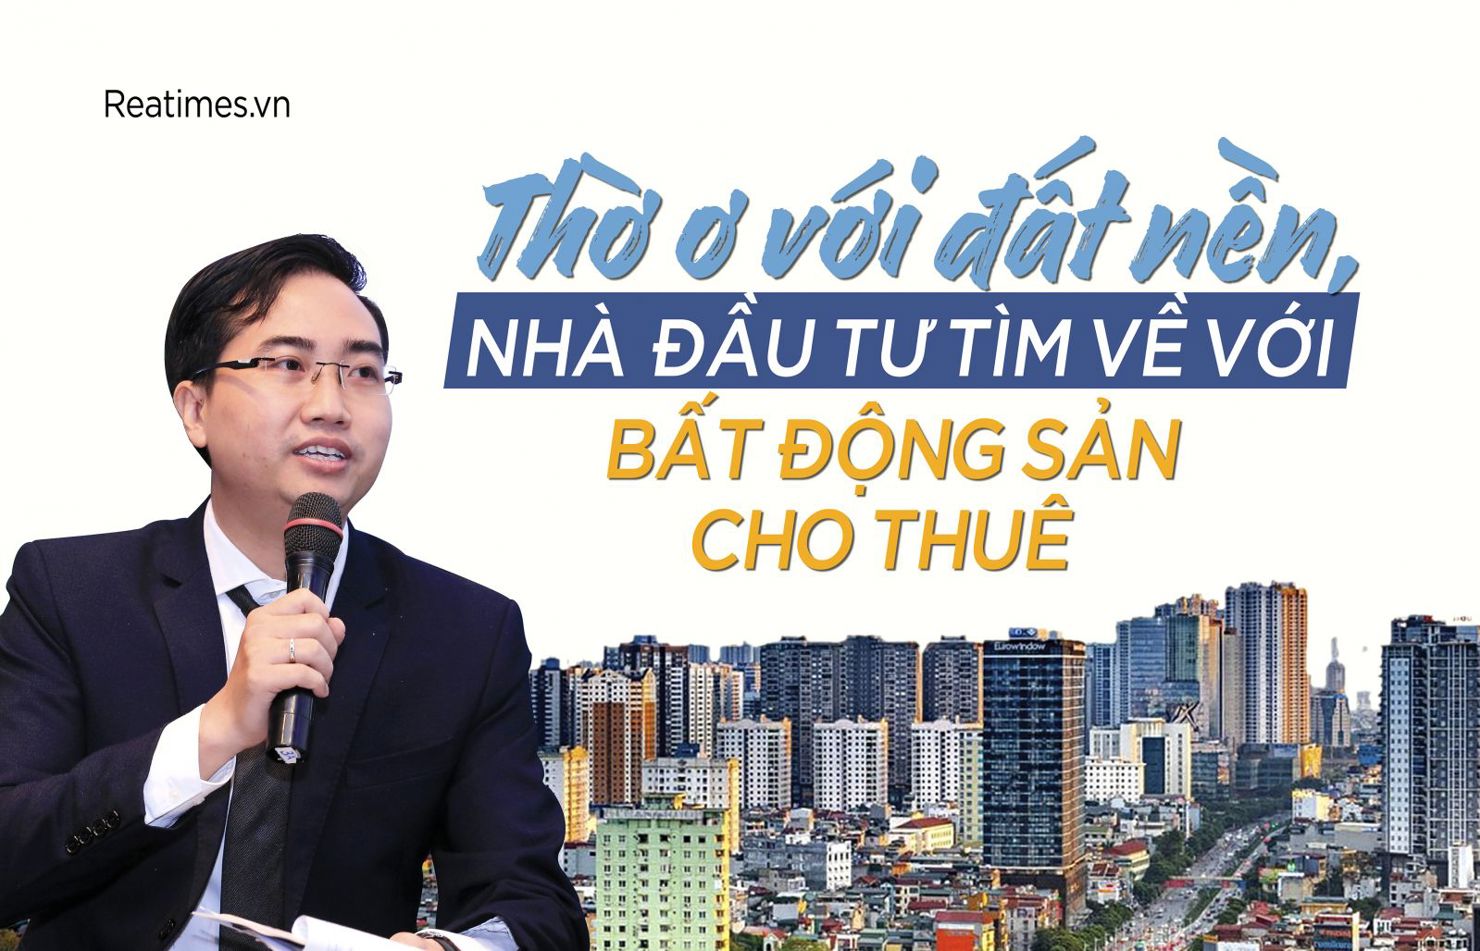 Ông Đinh Minh Tuấn, Giám đốc Batdongsan.com.vn khu vực miền Nam cho rằng, đầu tư bất động sản cho thuê sẽ là phương thức được nhiều nhà đầu tư lựa chọn.